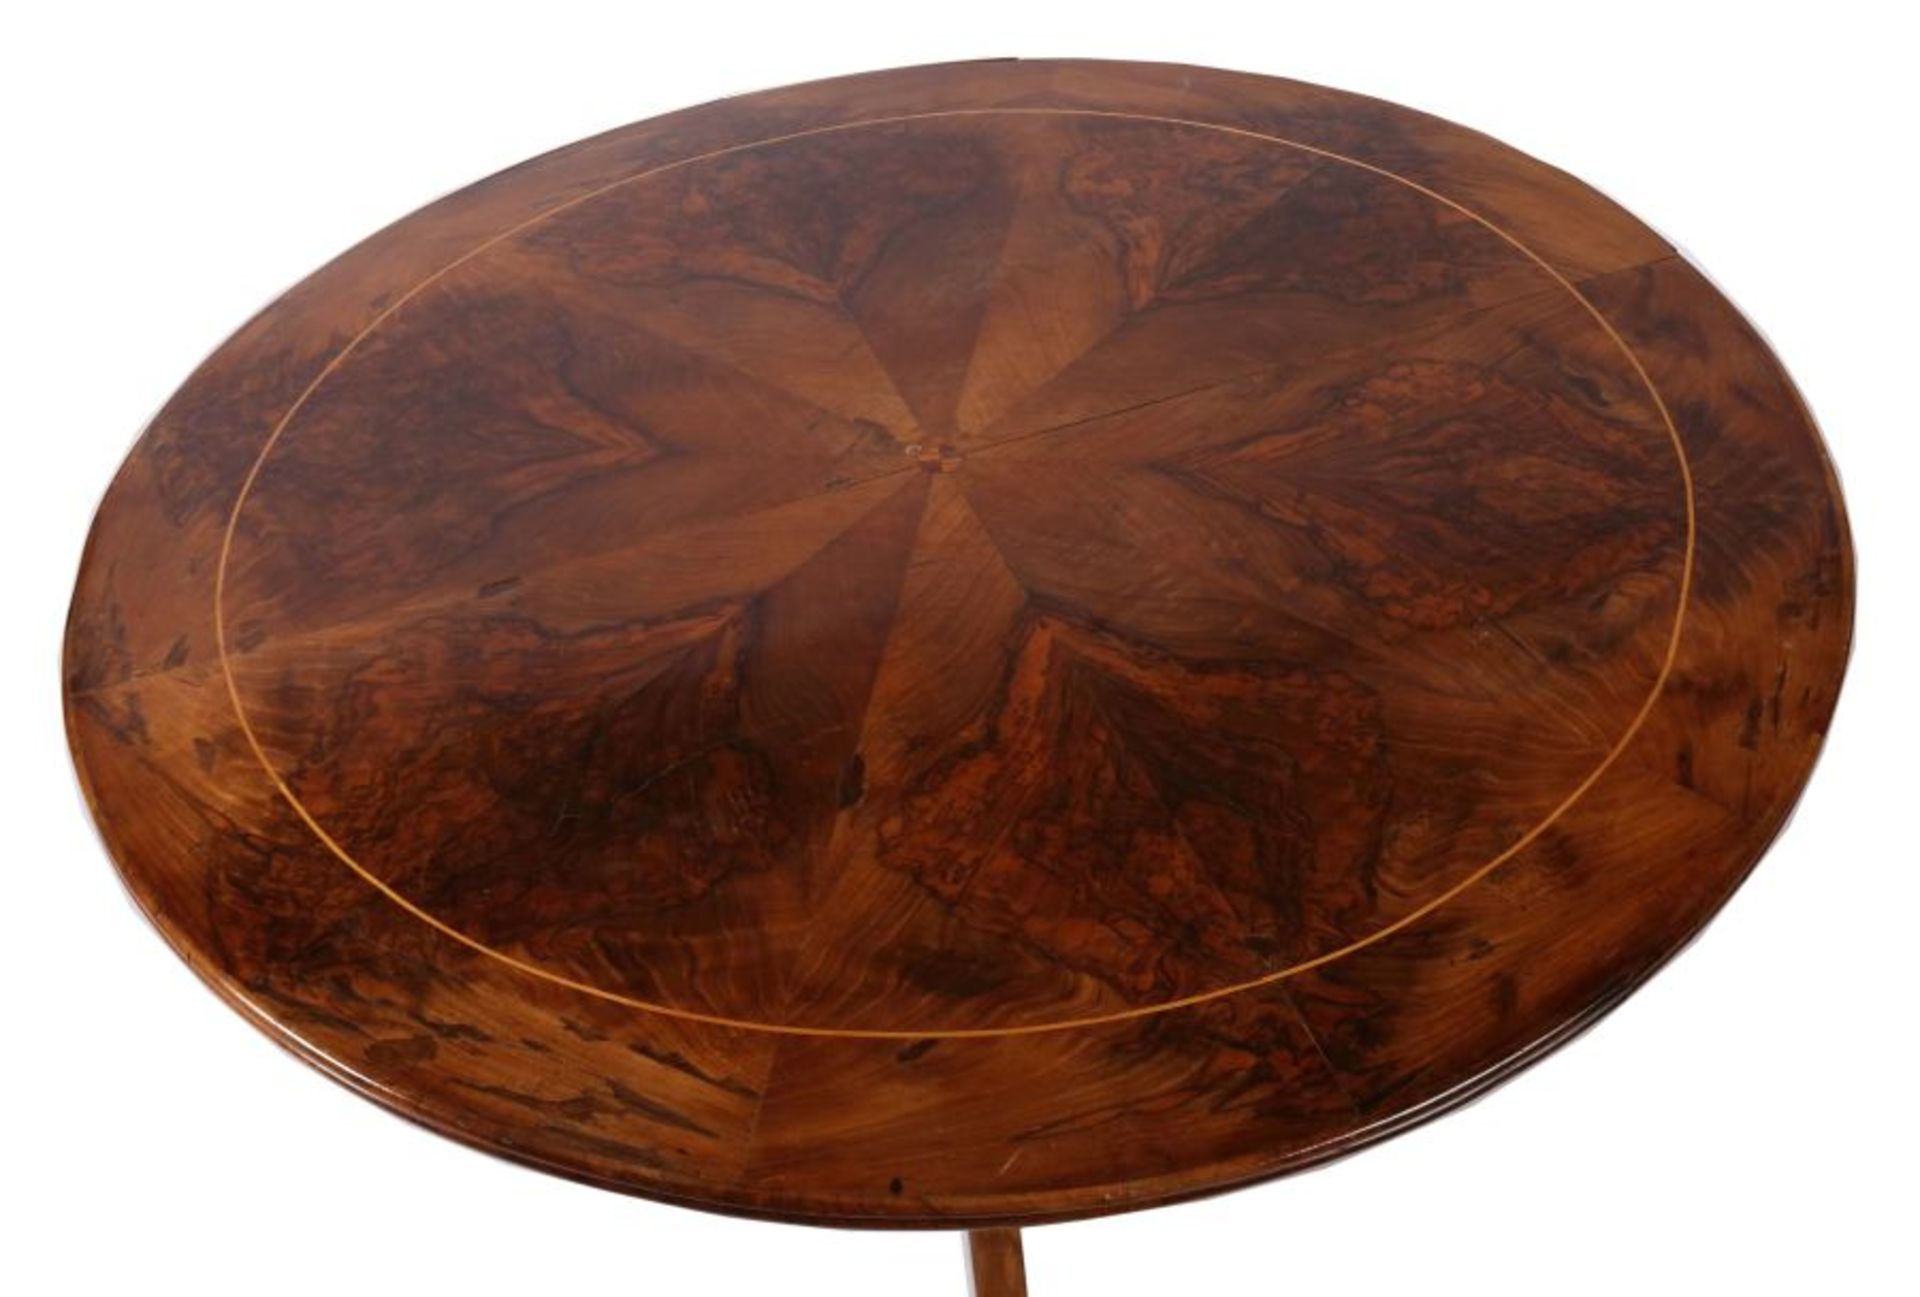 Biedermeier-Piedestal Tisch 2. Viertel 19. Jh., Nussbaum/Nussbaummaser furniert, runde Tischplatte - Bild 2 aus 2